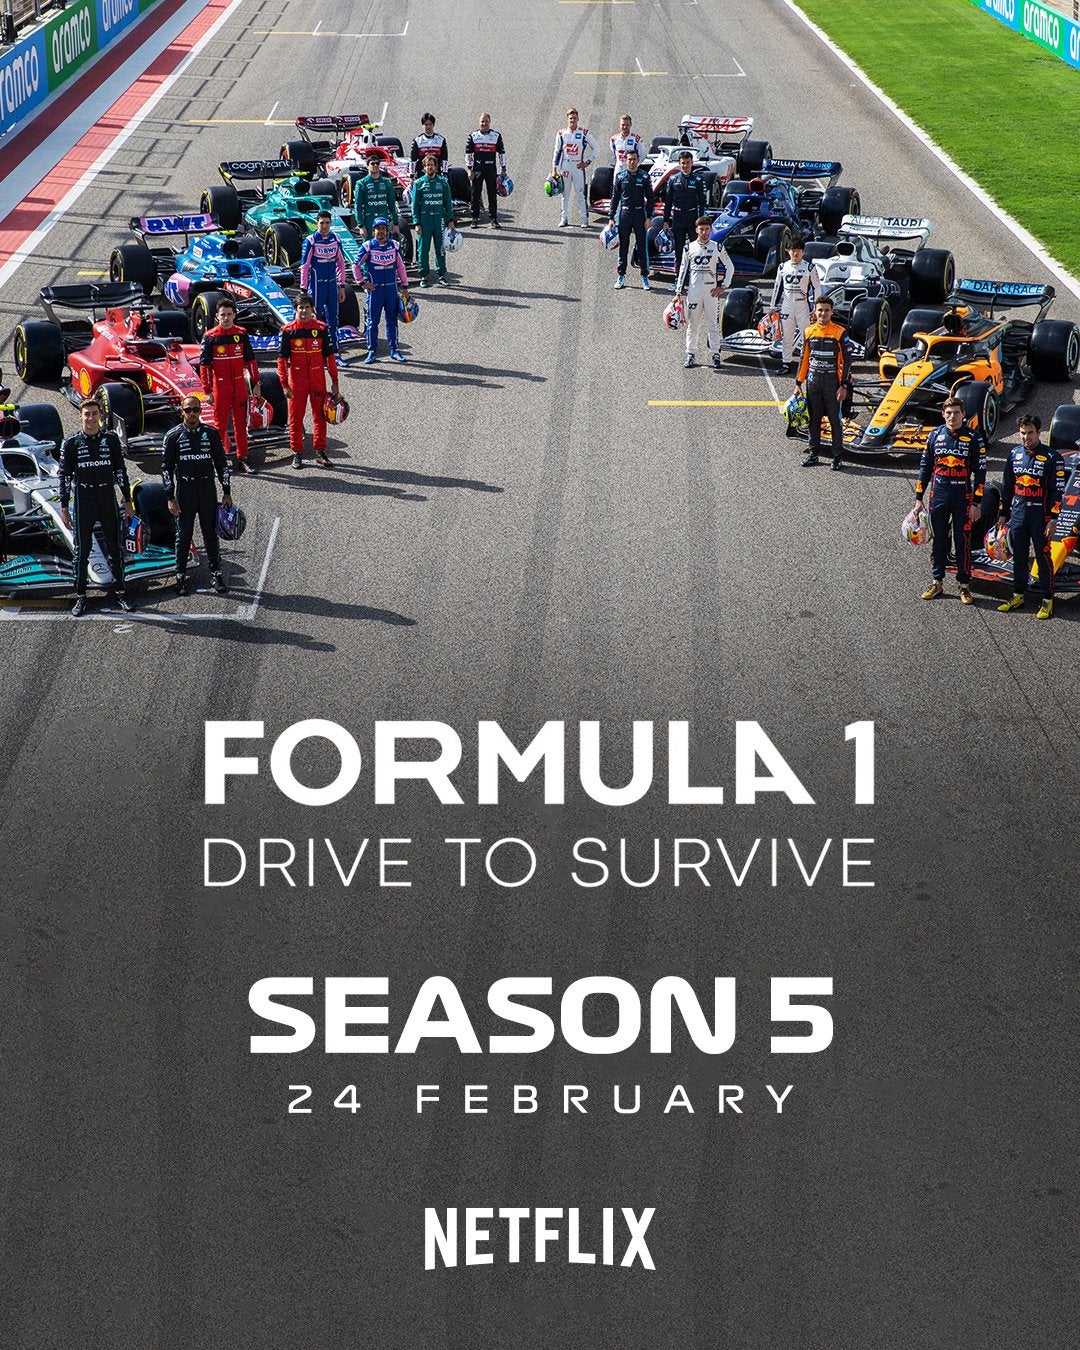 Imagem para Formula 1: Drive to Survive Season 5 estreia no final de Fevereiro